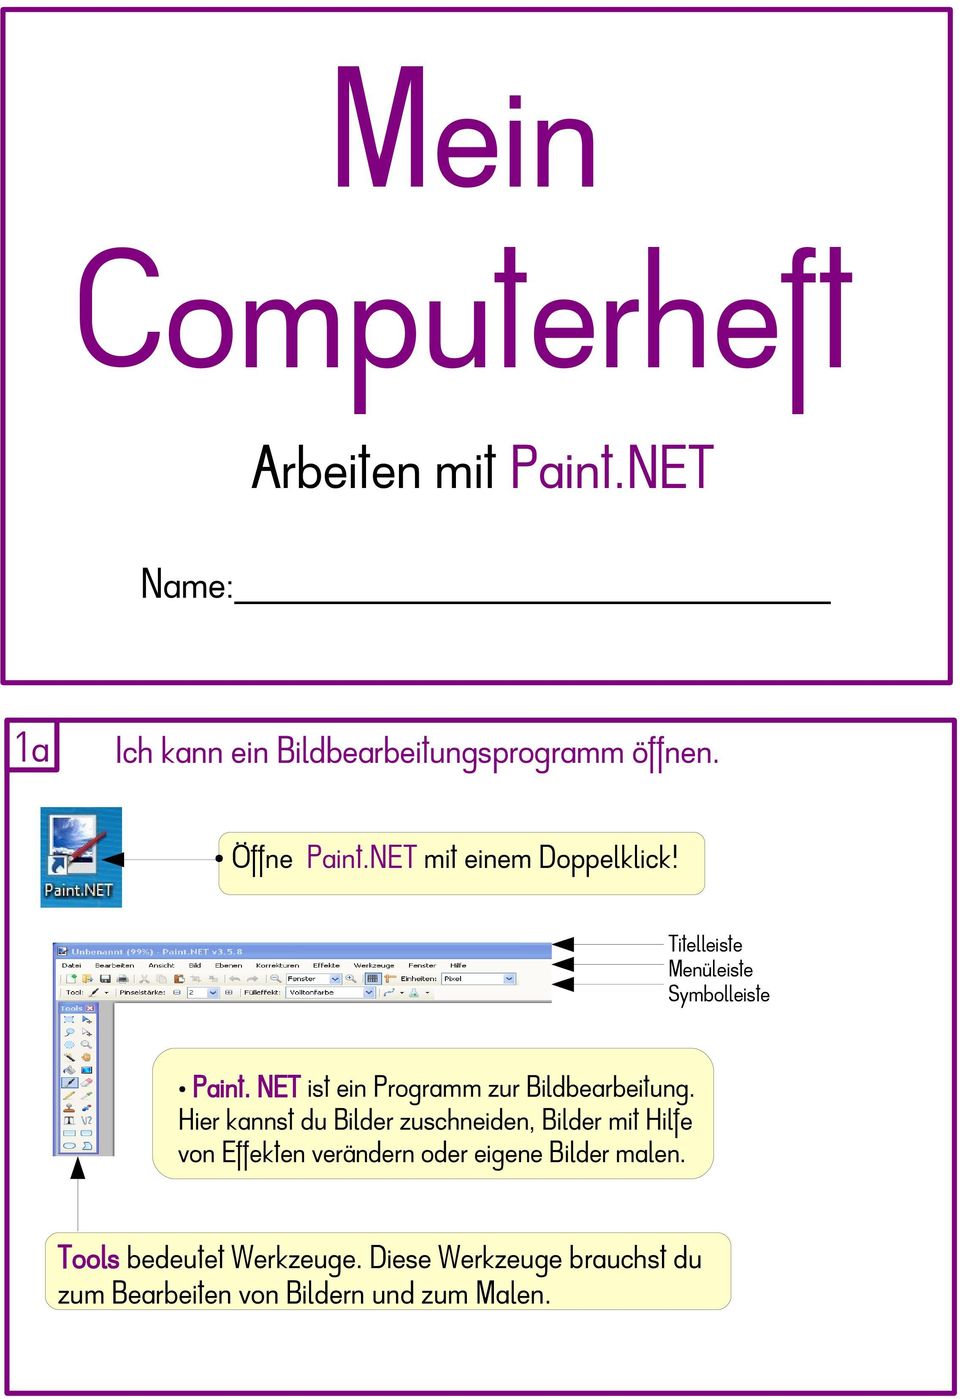 NET ist ein Programm zur Bildbearbeitung.